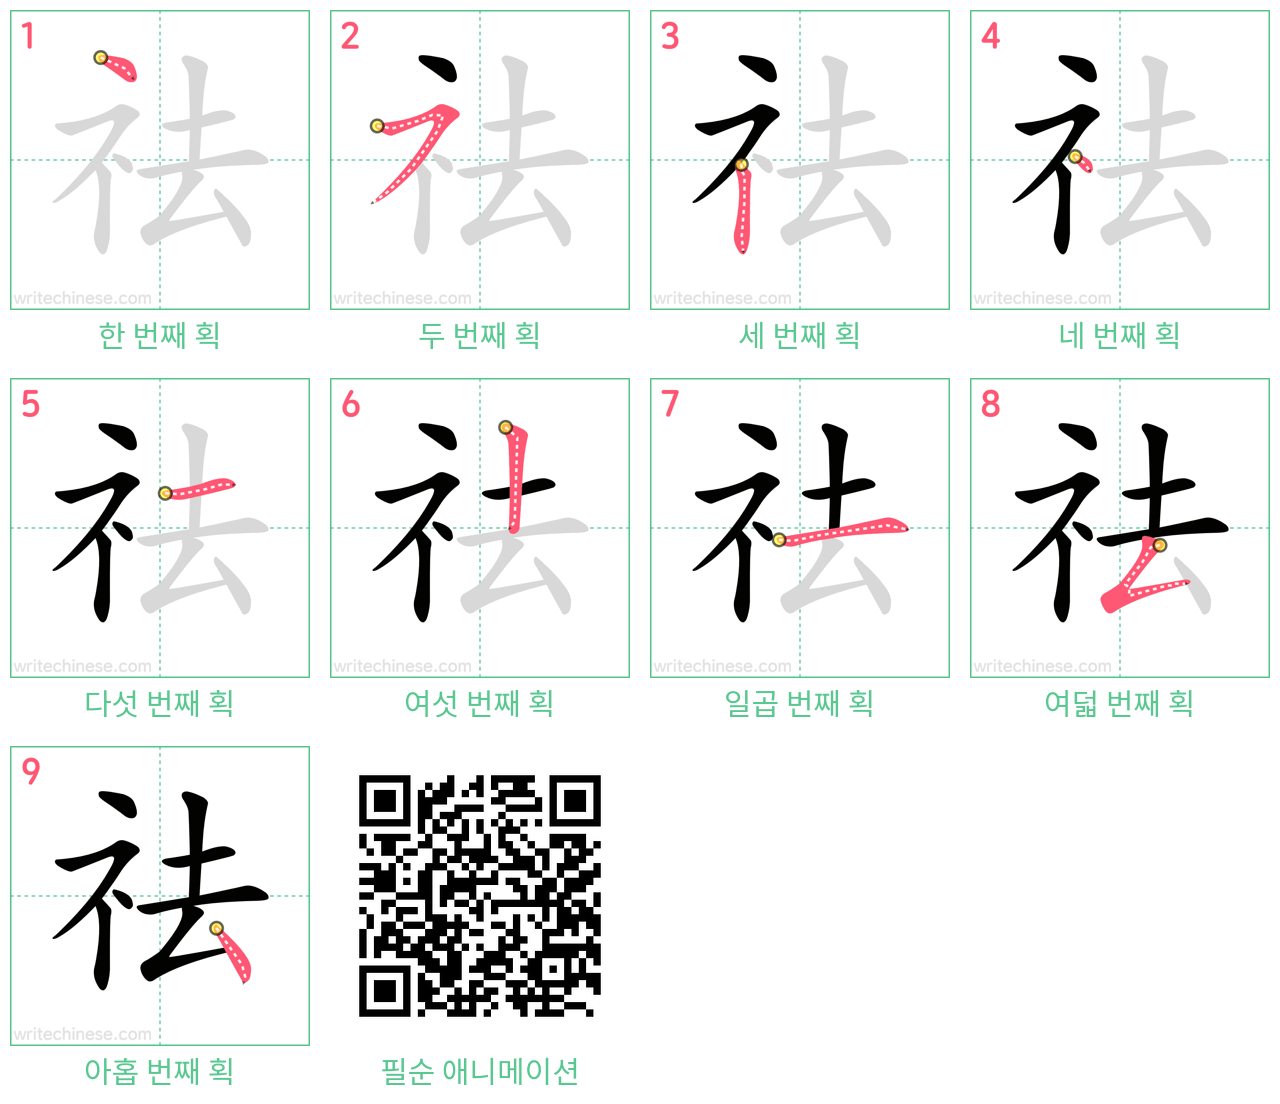 祛 step-by-step stroke order diagrams